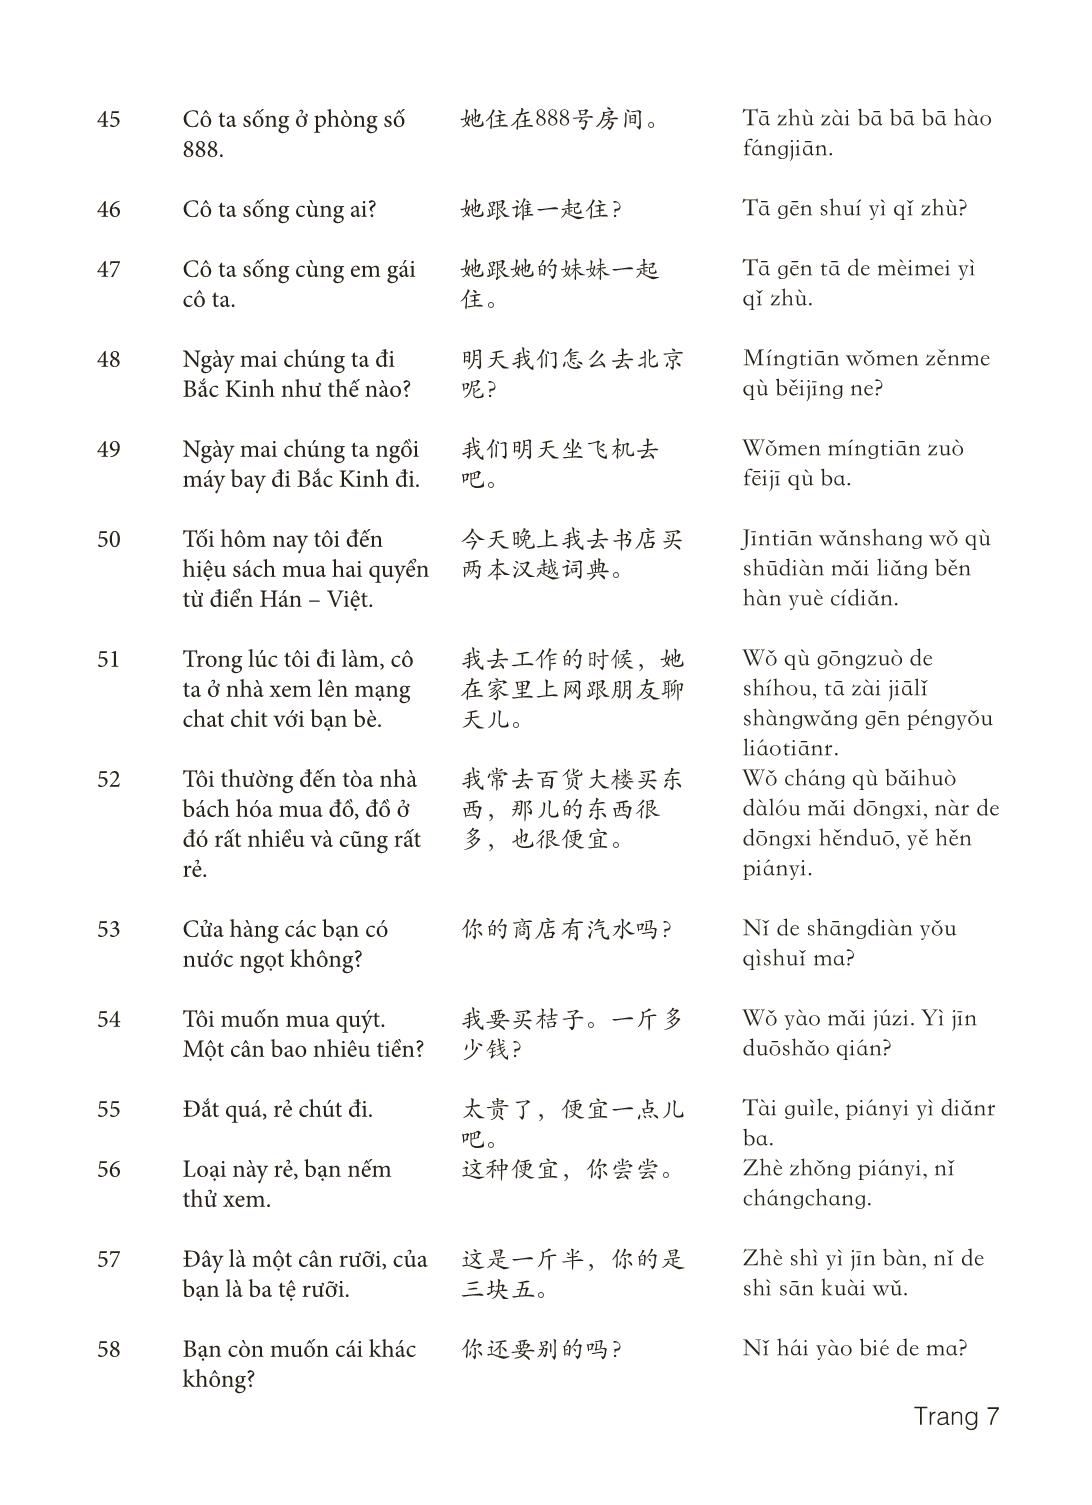 3000 Câu đàm thoại tiếng Hoa - Phần 4 trang 7